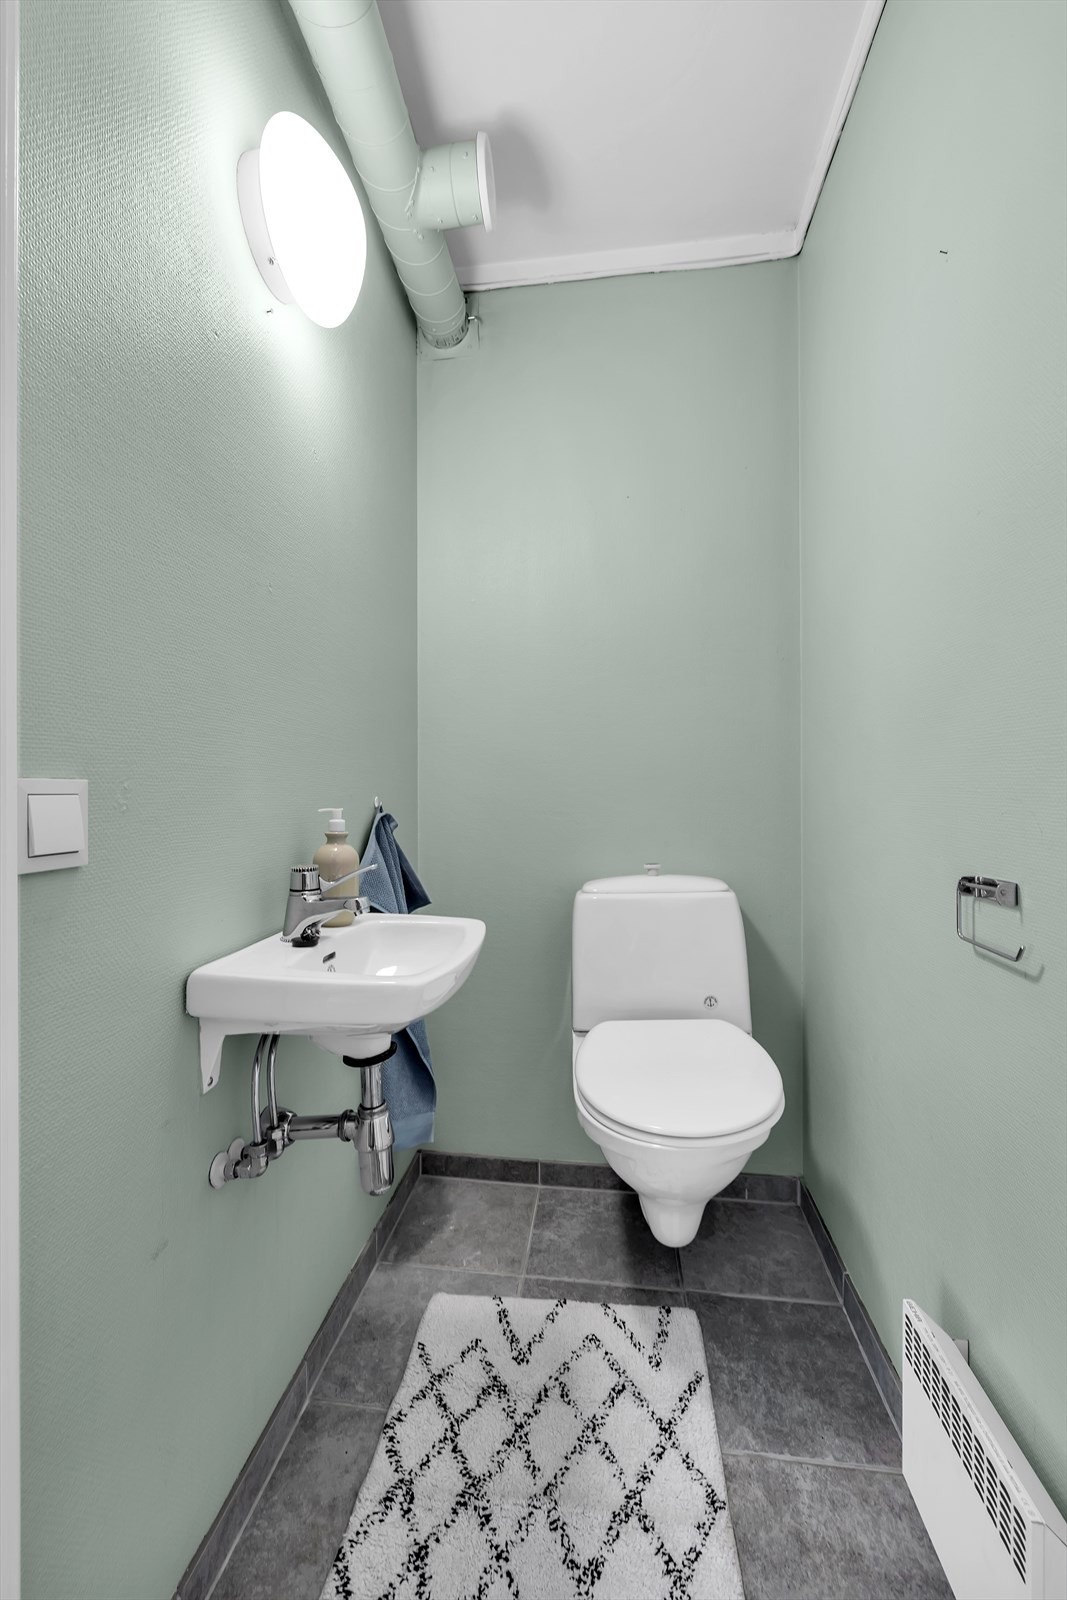 Toalett i eget rom - adskilt fra bad.